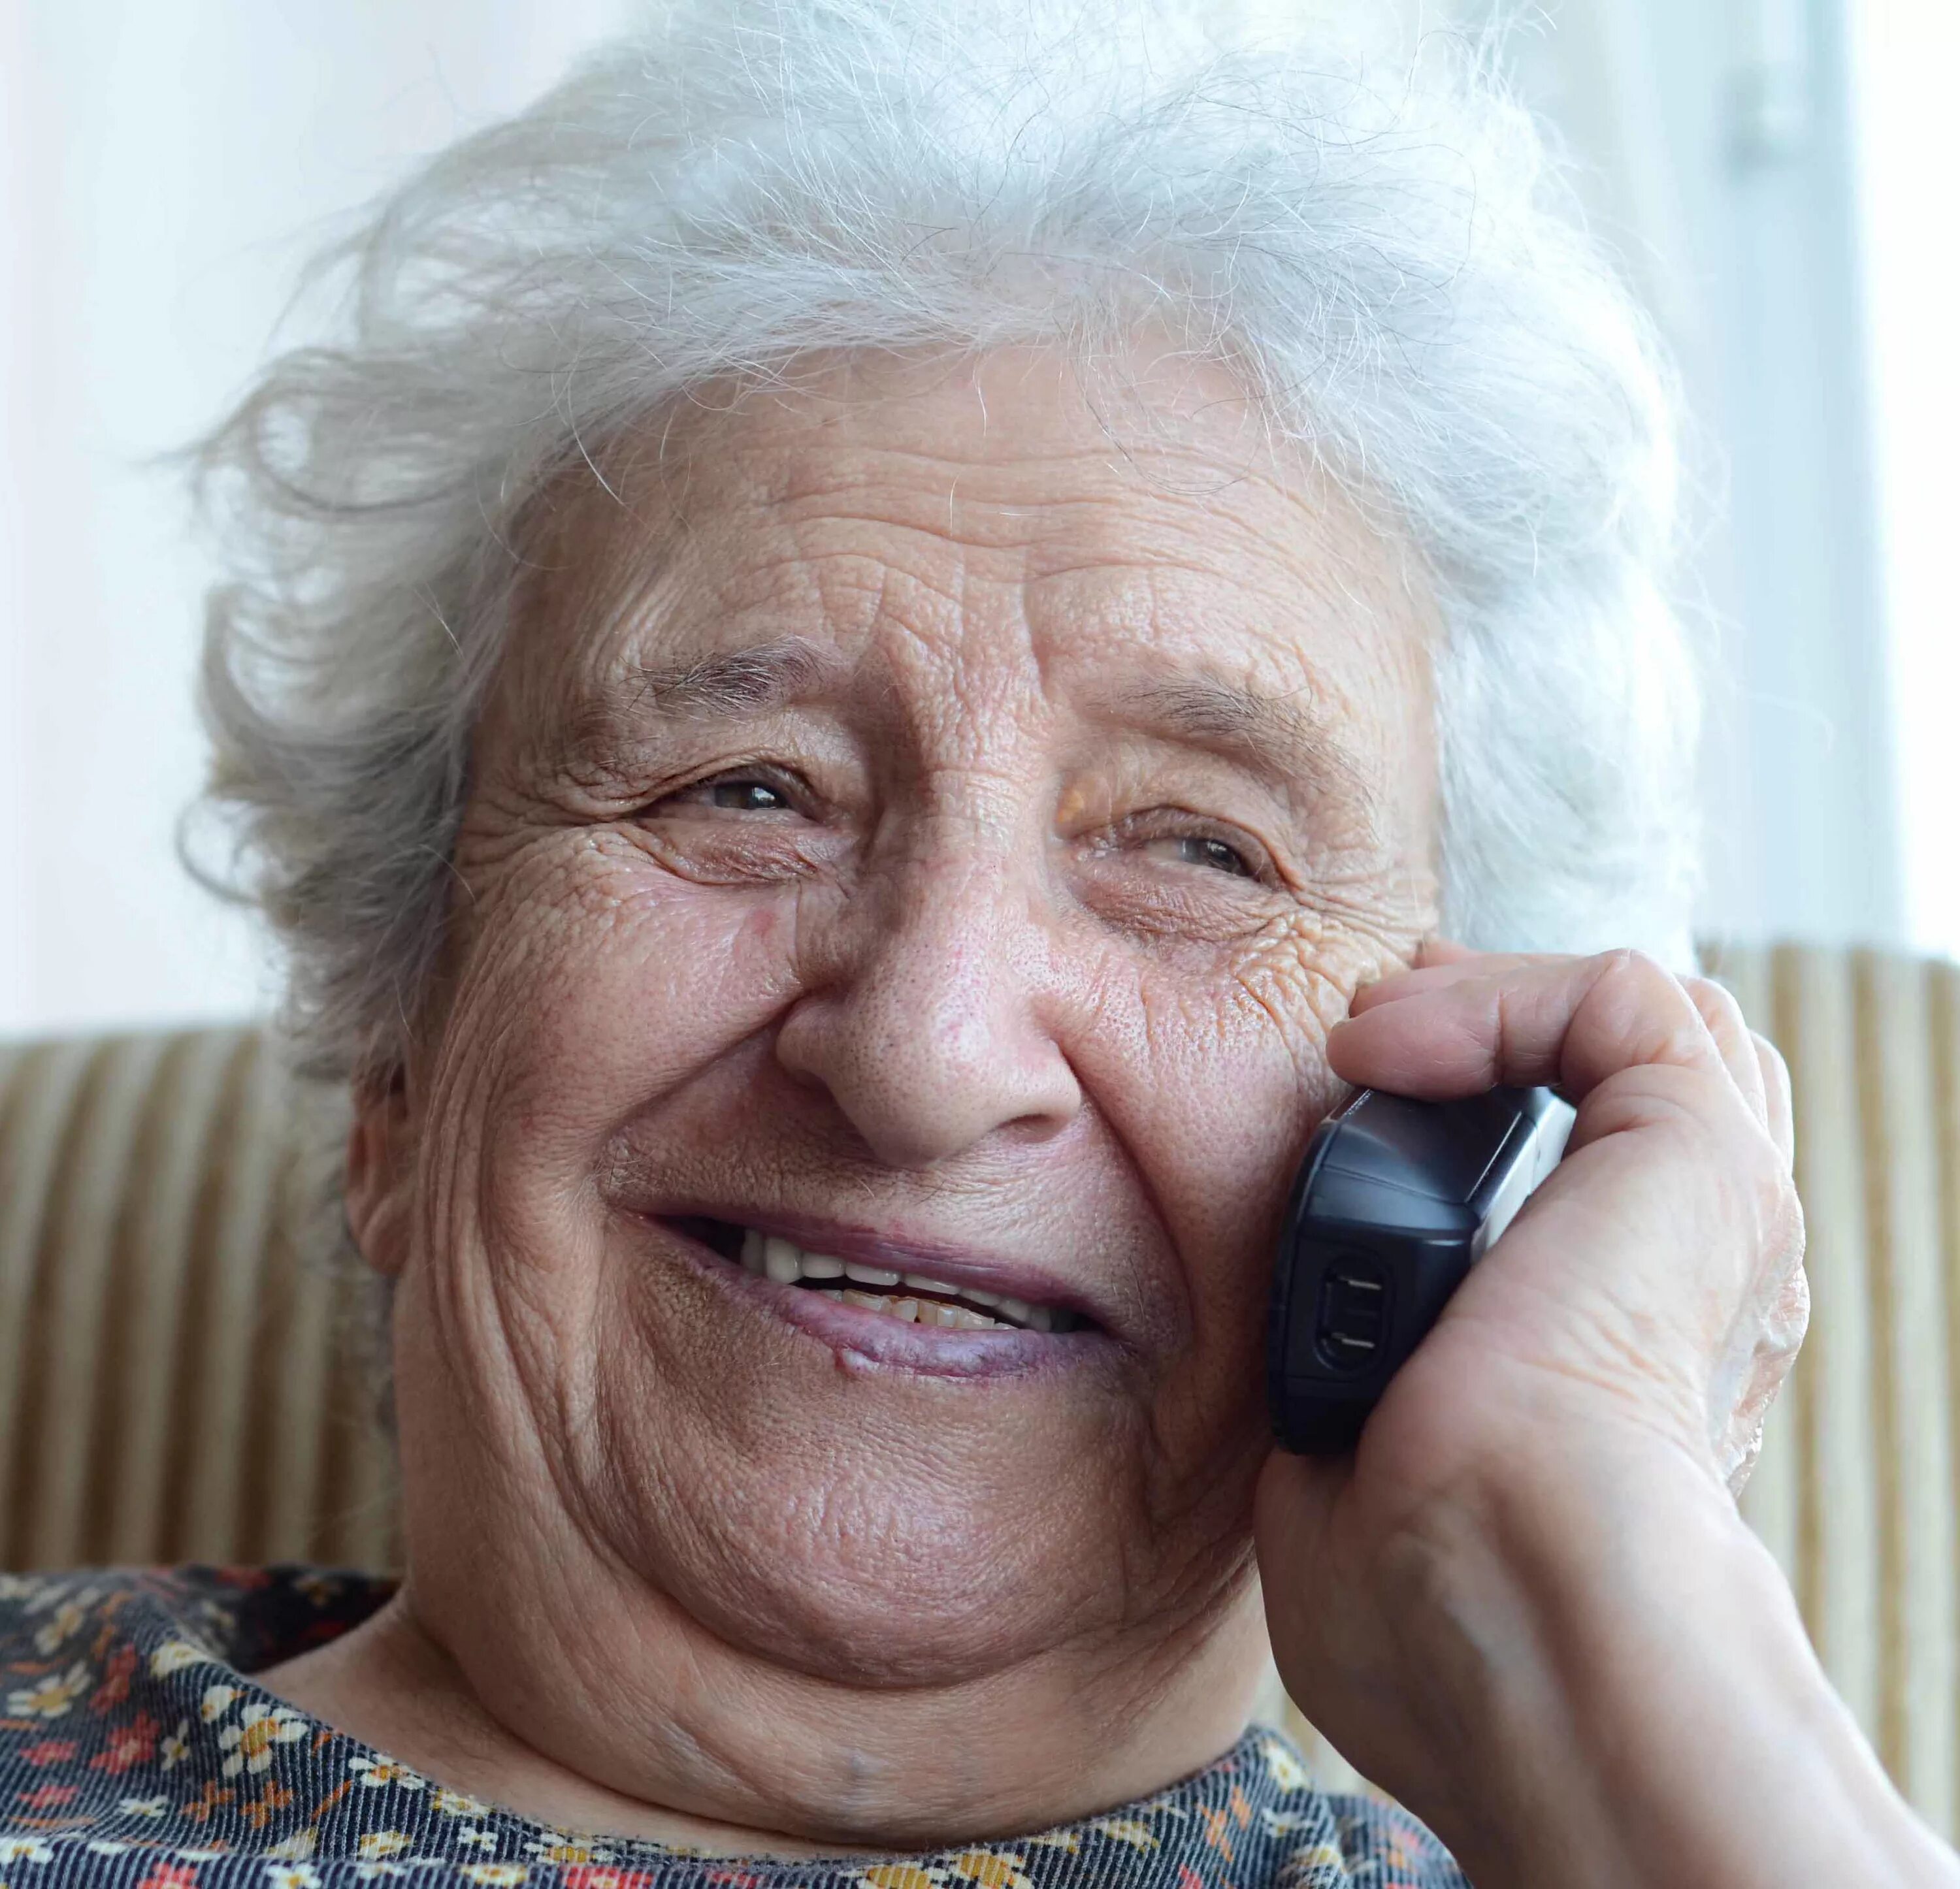 Какой номер бабушки. Бабушка с мобильником. Бабка с телефоном. Телефон для пожилых людей. Бабуля с телефоном.